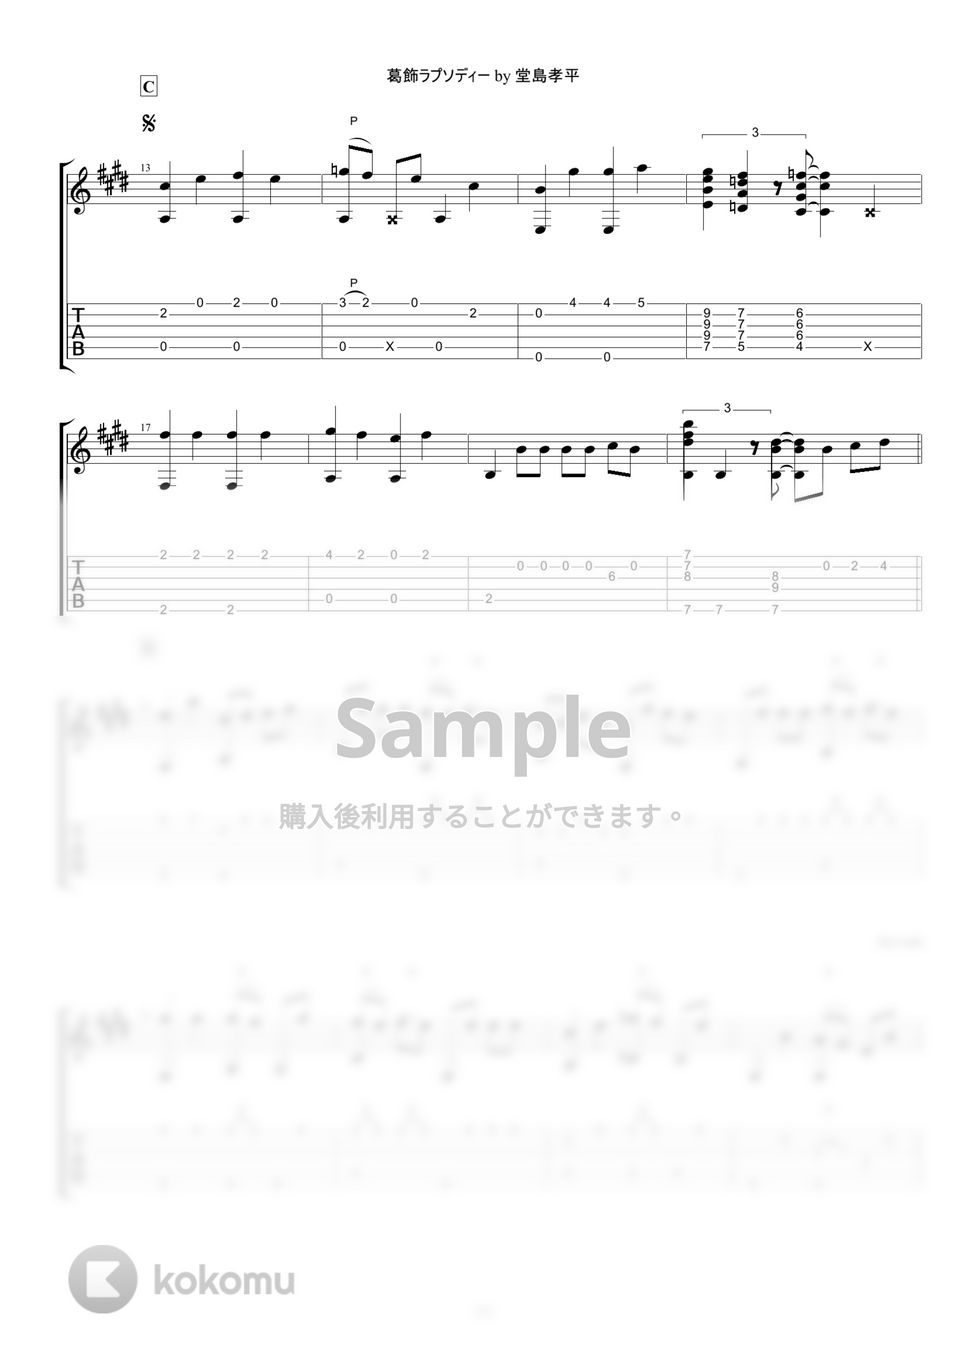 こち亀 - 葛飾ラプソディー (ソロギターアレンジ) by ぎたーきたー